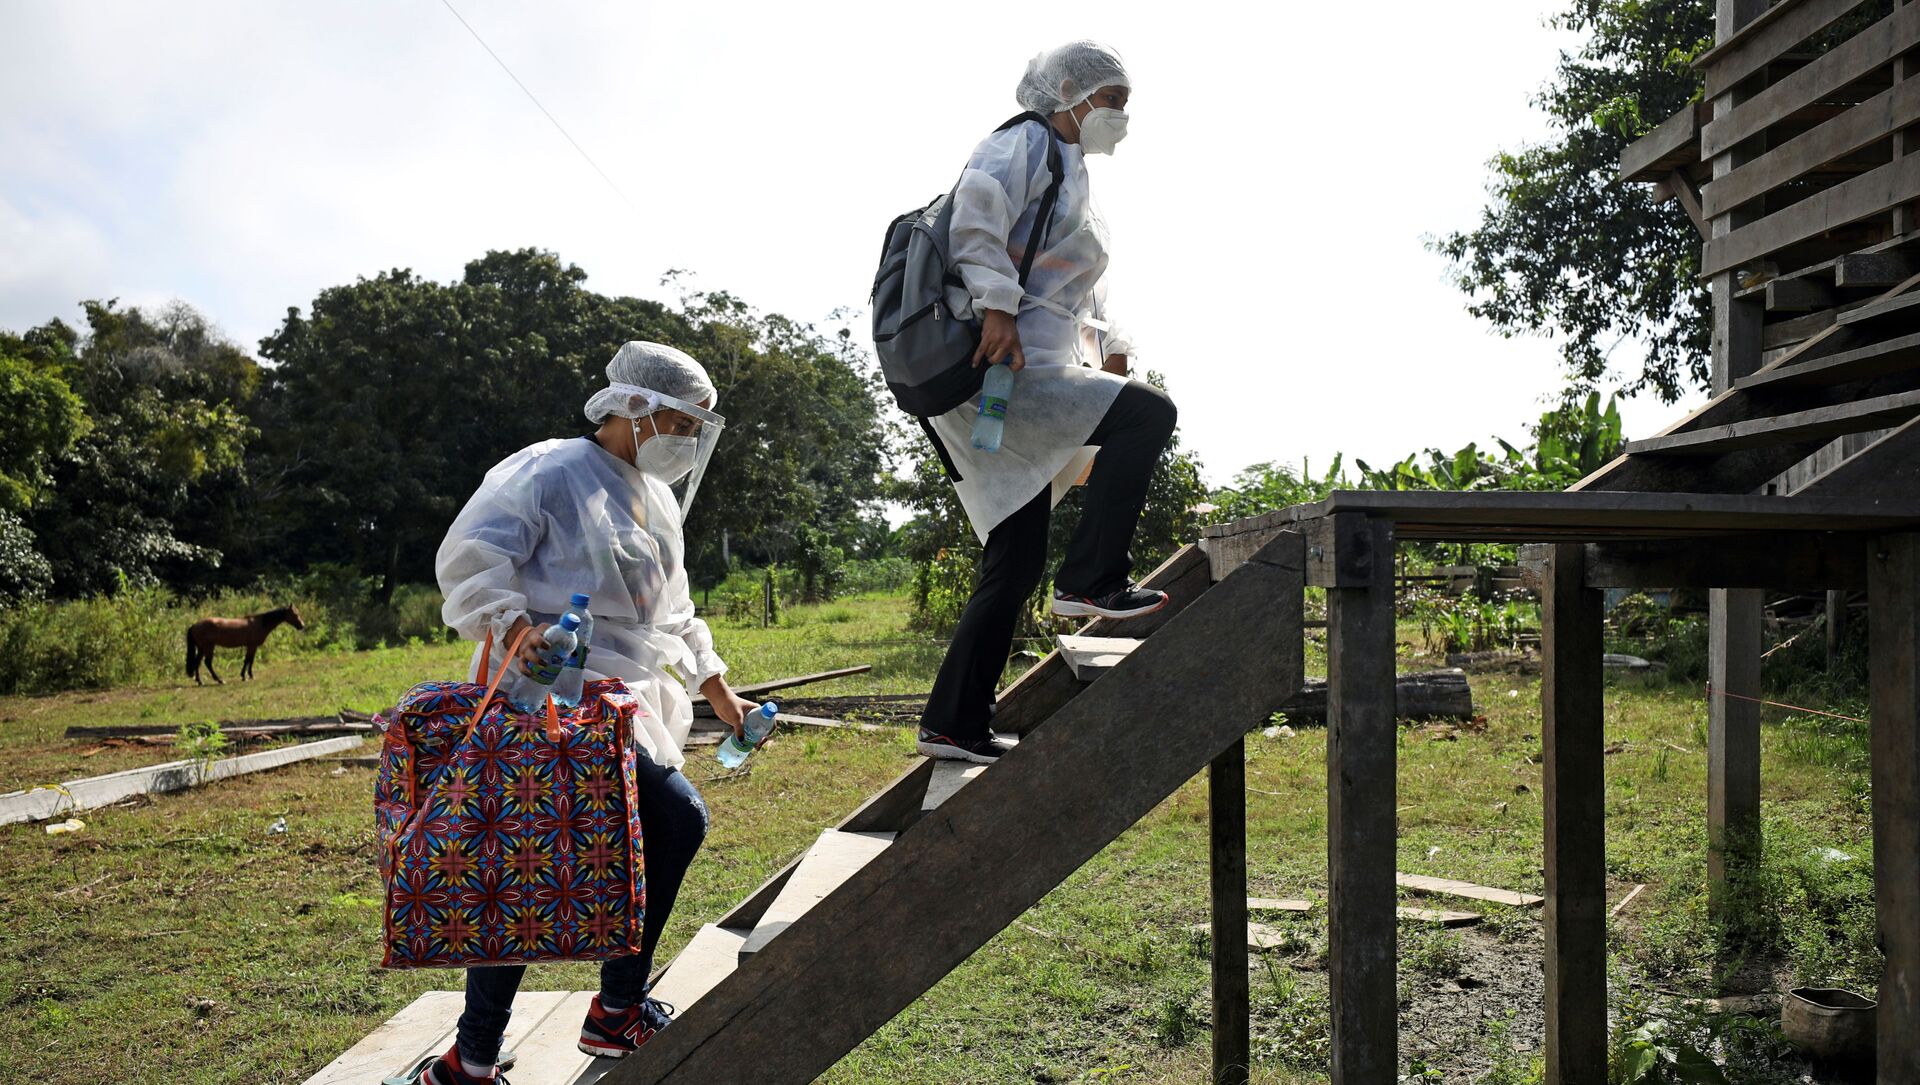 Funcionários da área de saúde carregam lote com doses da vacina de Oxford no município de Manacapuru, próximo ao rio Solimões, no Amazonas - Sputnik Brasil, 1920, 04.02.2021